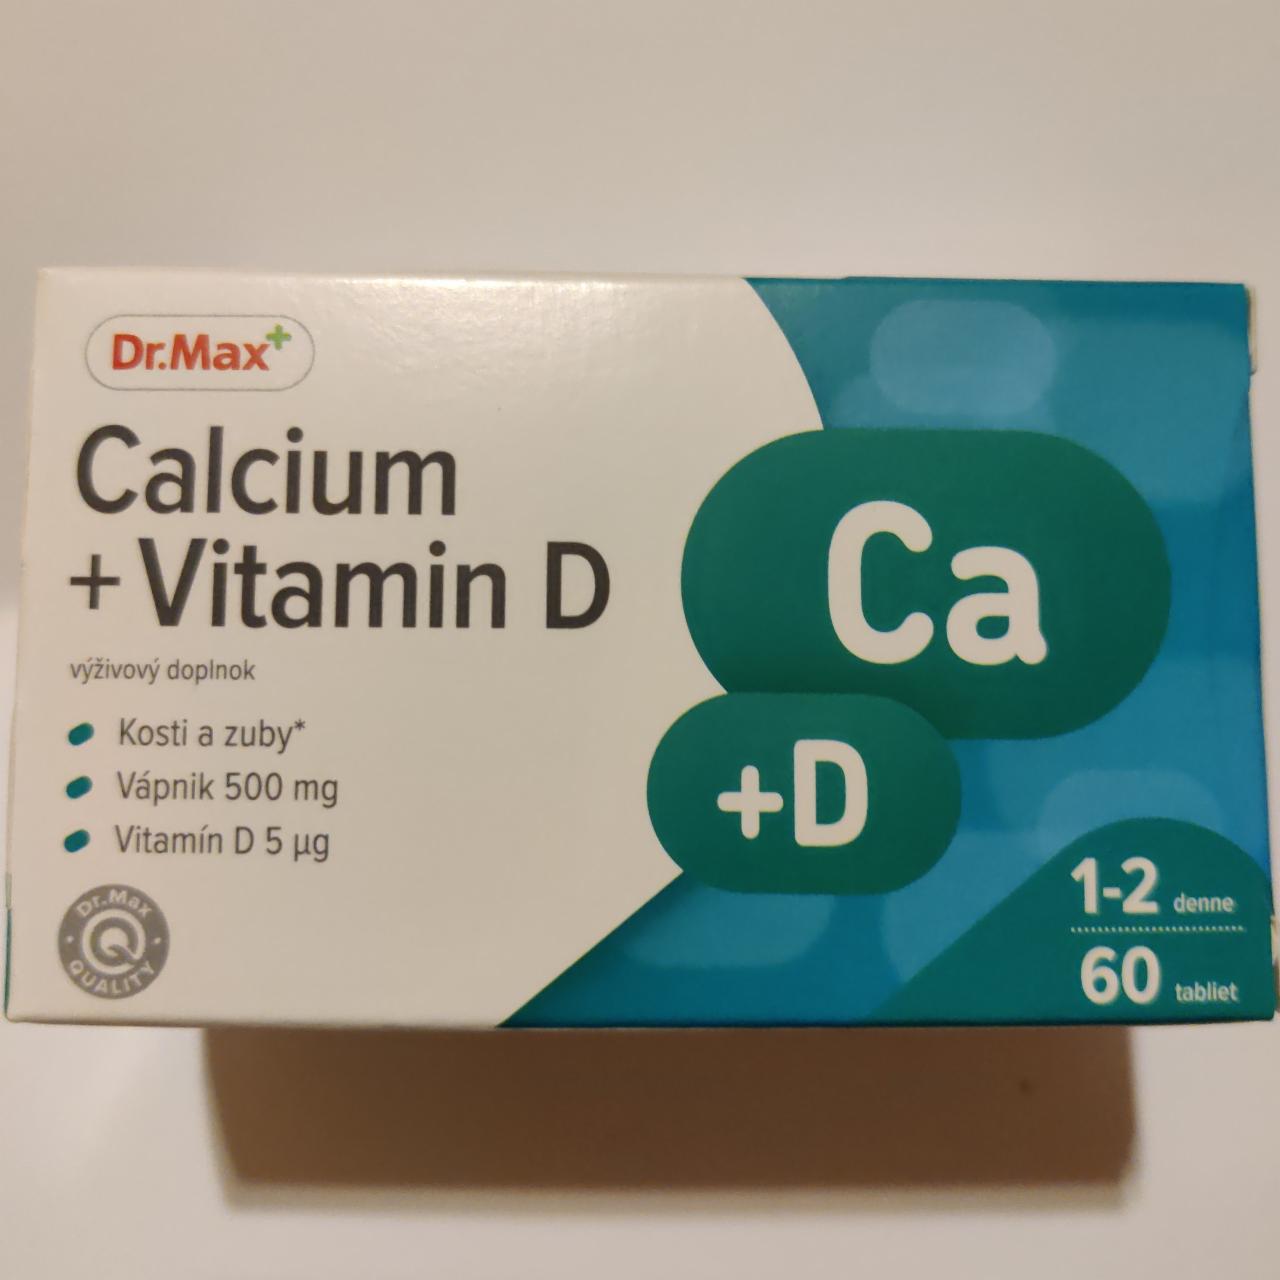 Fotografie - Calcium + Vitamin D Dr.Max